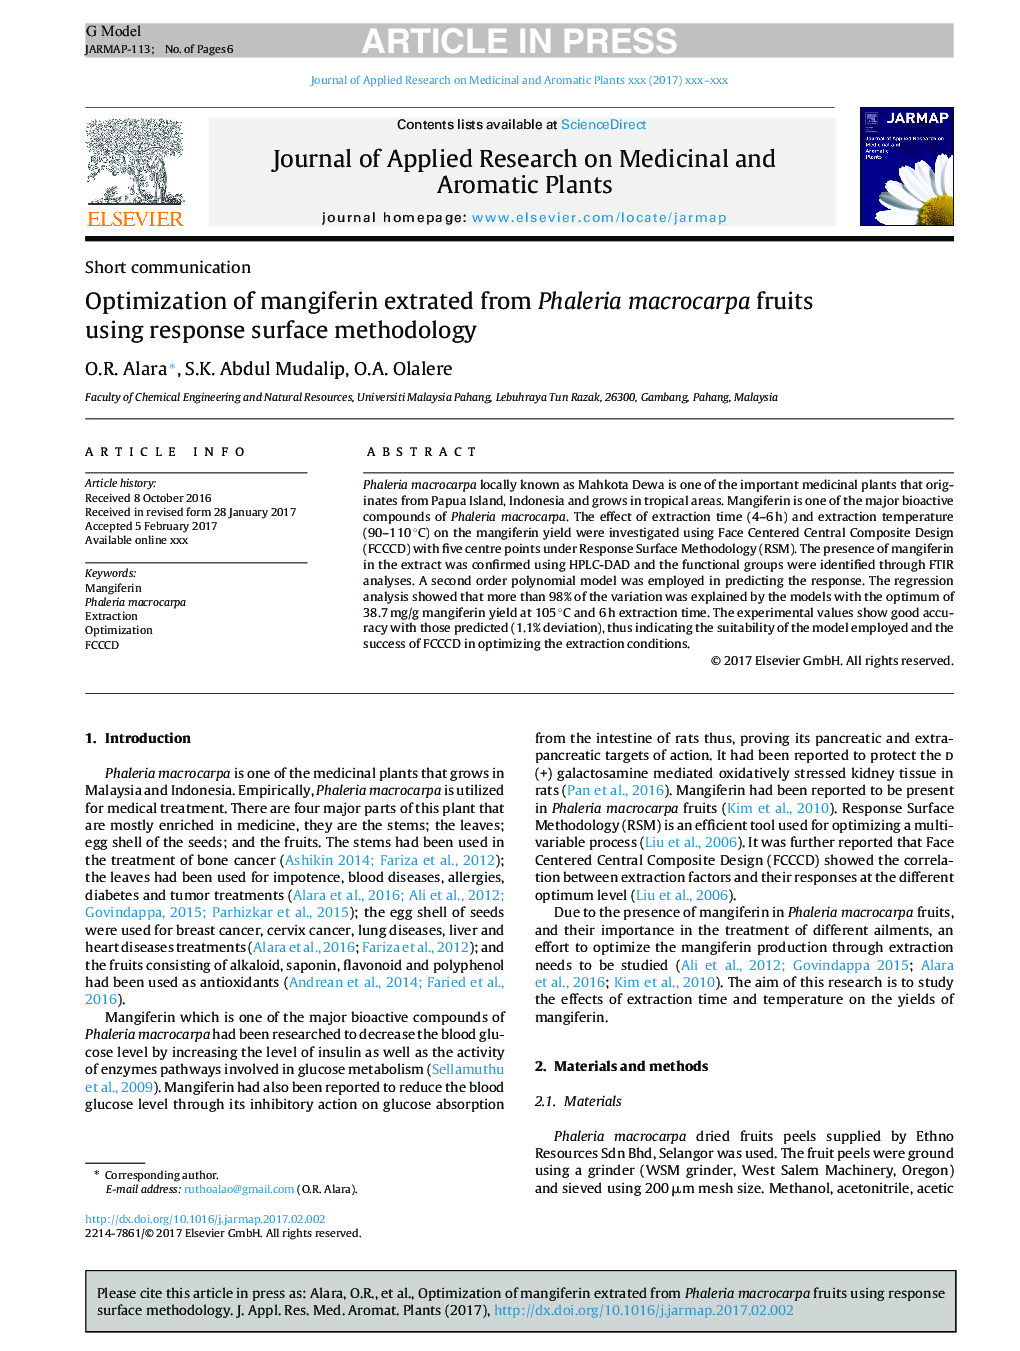 Optimization of mangiferin extrated from Phaleria macrocarpa fruits using response surface methodology